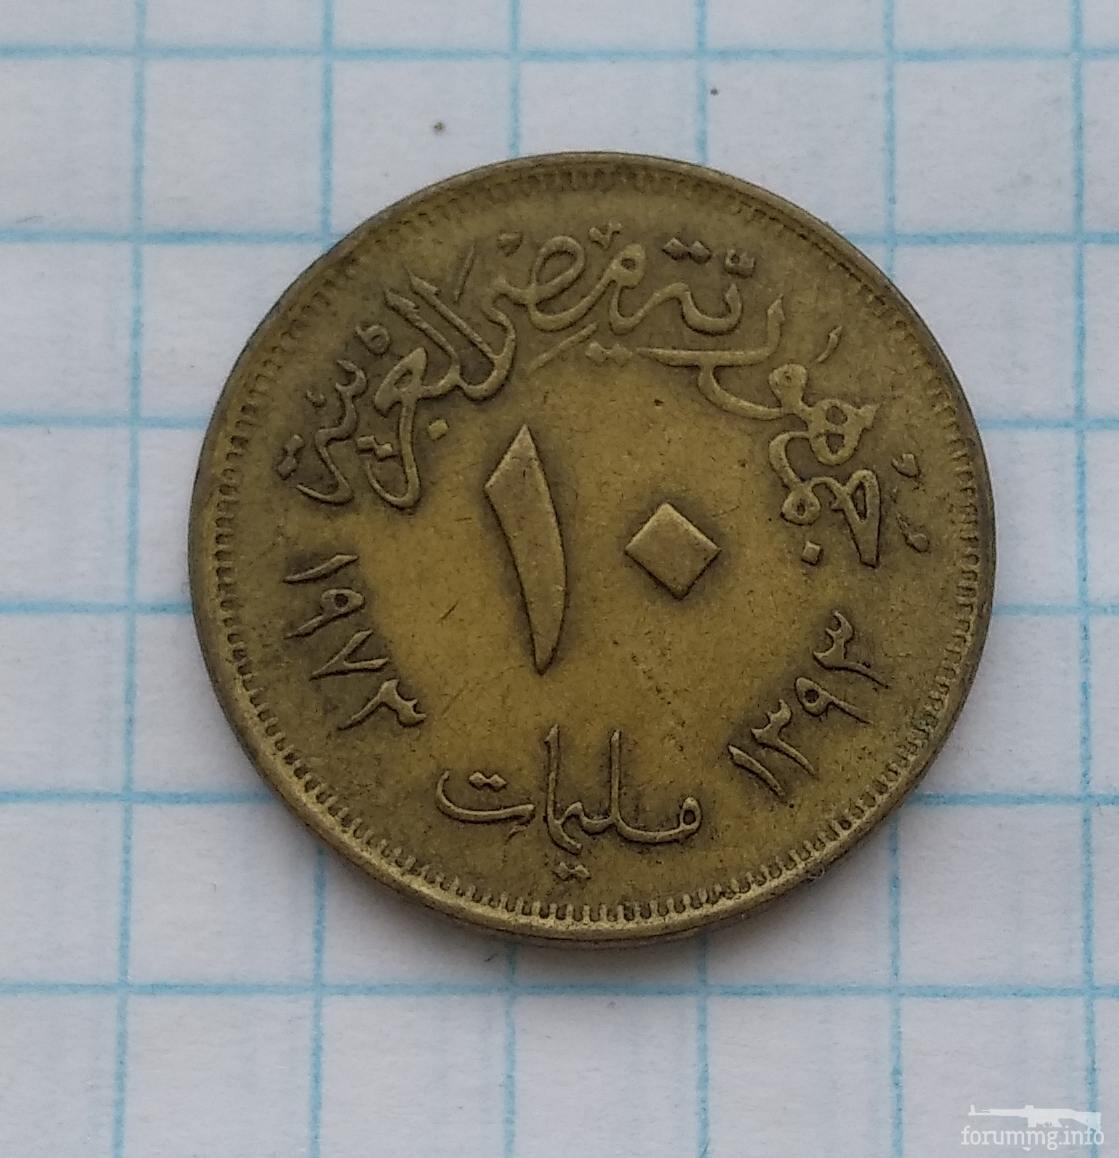 145783 - Монети Єгипту, подарунковий набір.